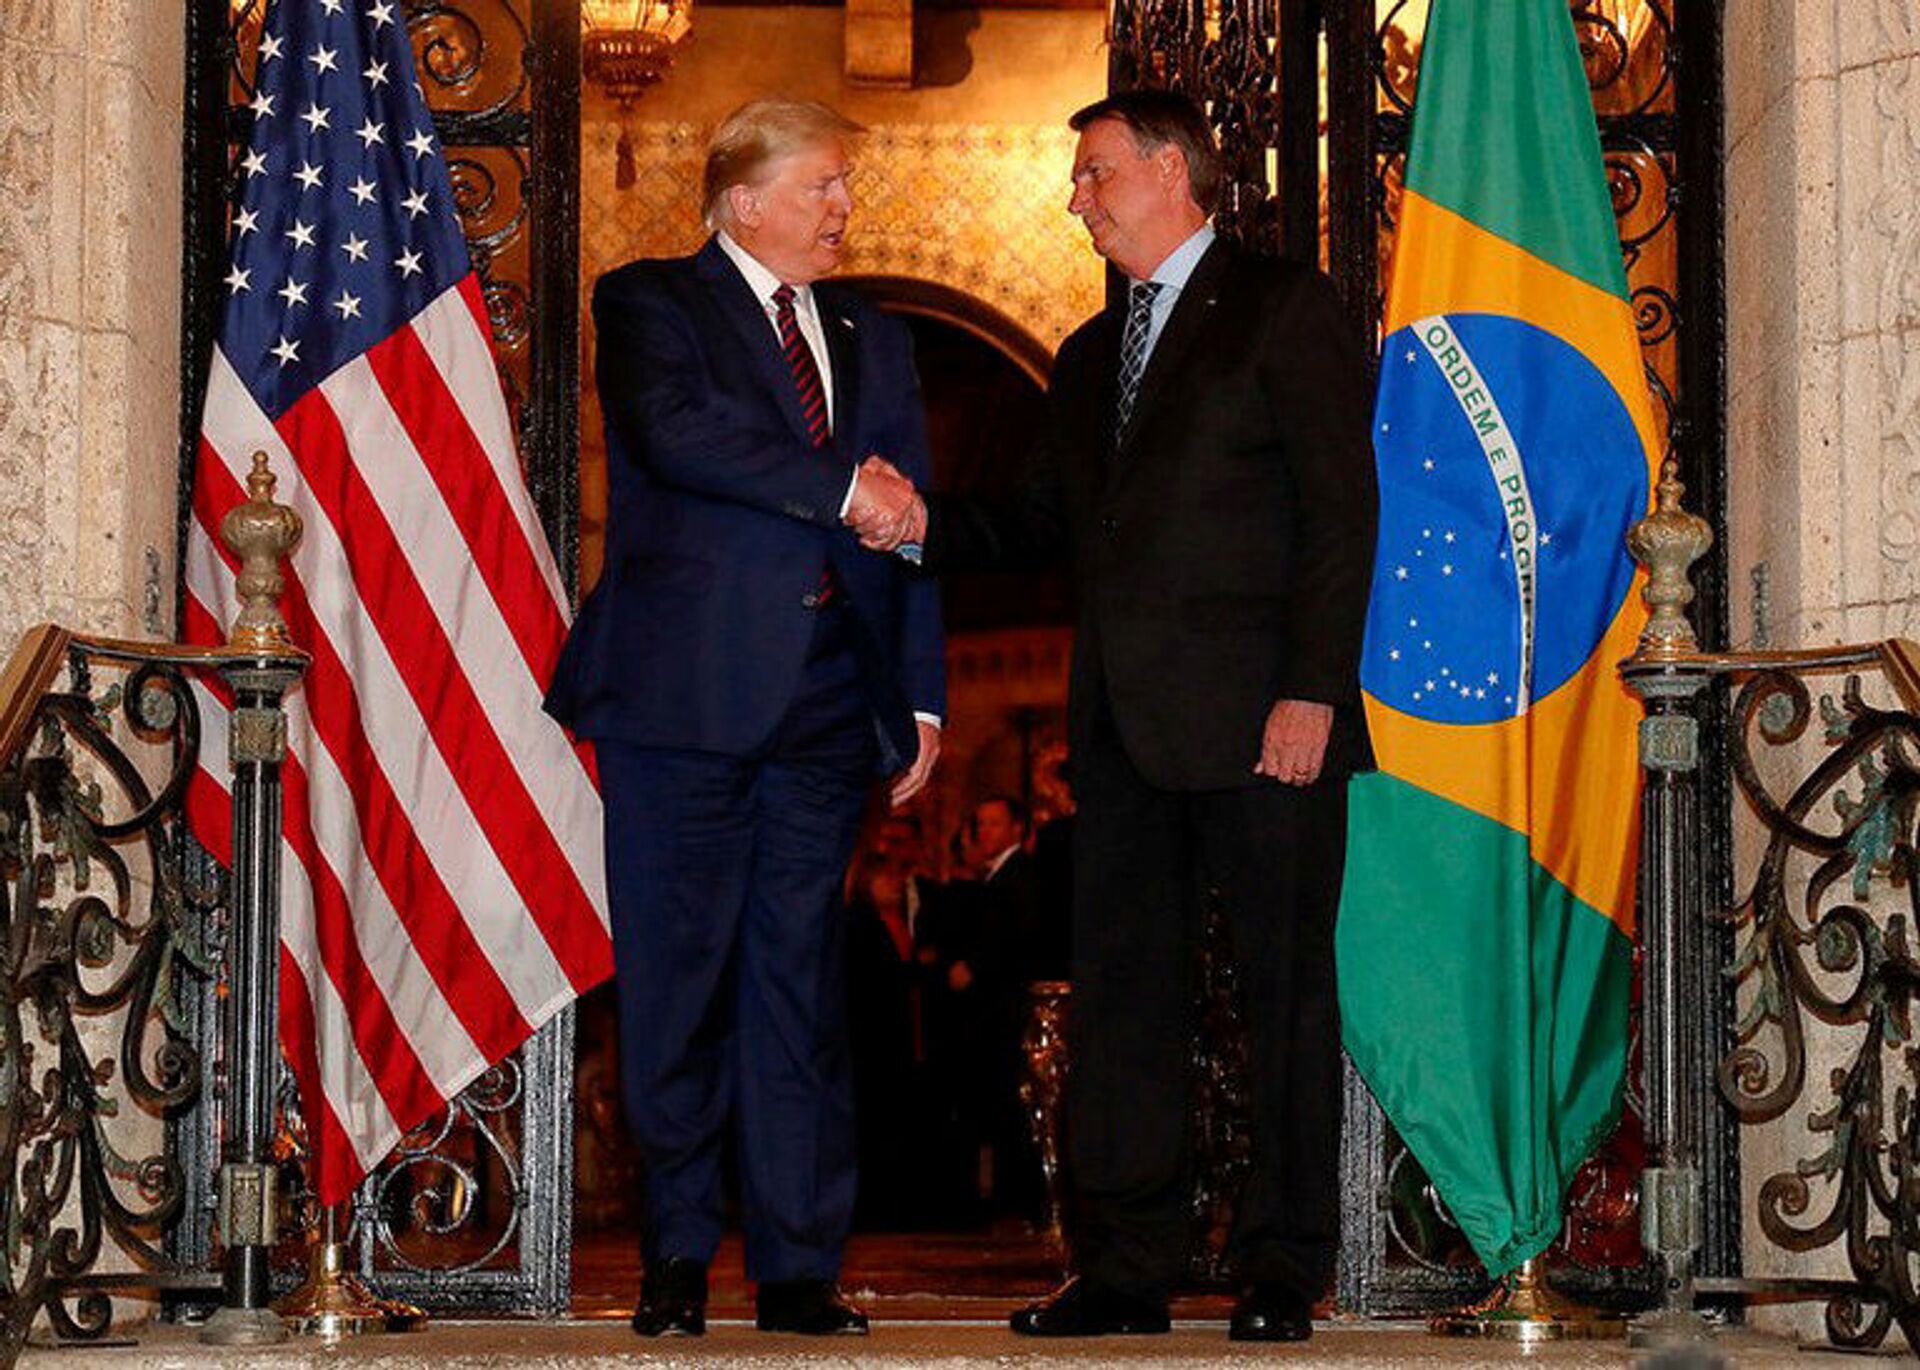 Políticos norte-americanos cobram governo Biden sobre posição dos EUA durante Lava Jato no Brasil - Sputnik Brasil, 1920, 07.06.2021